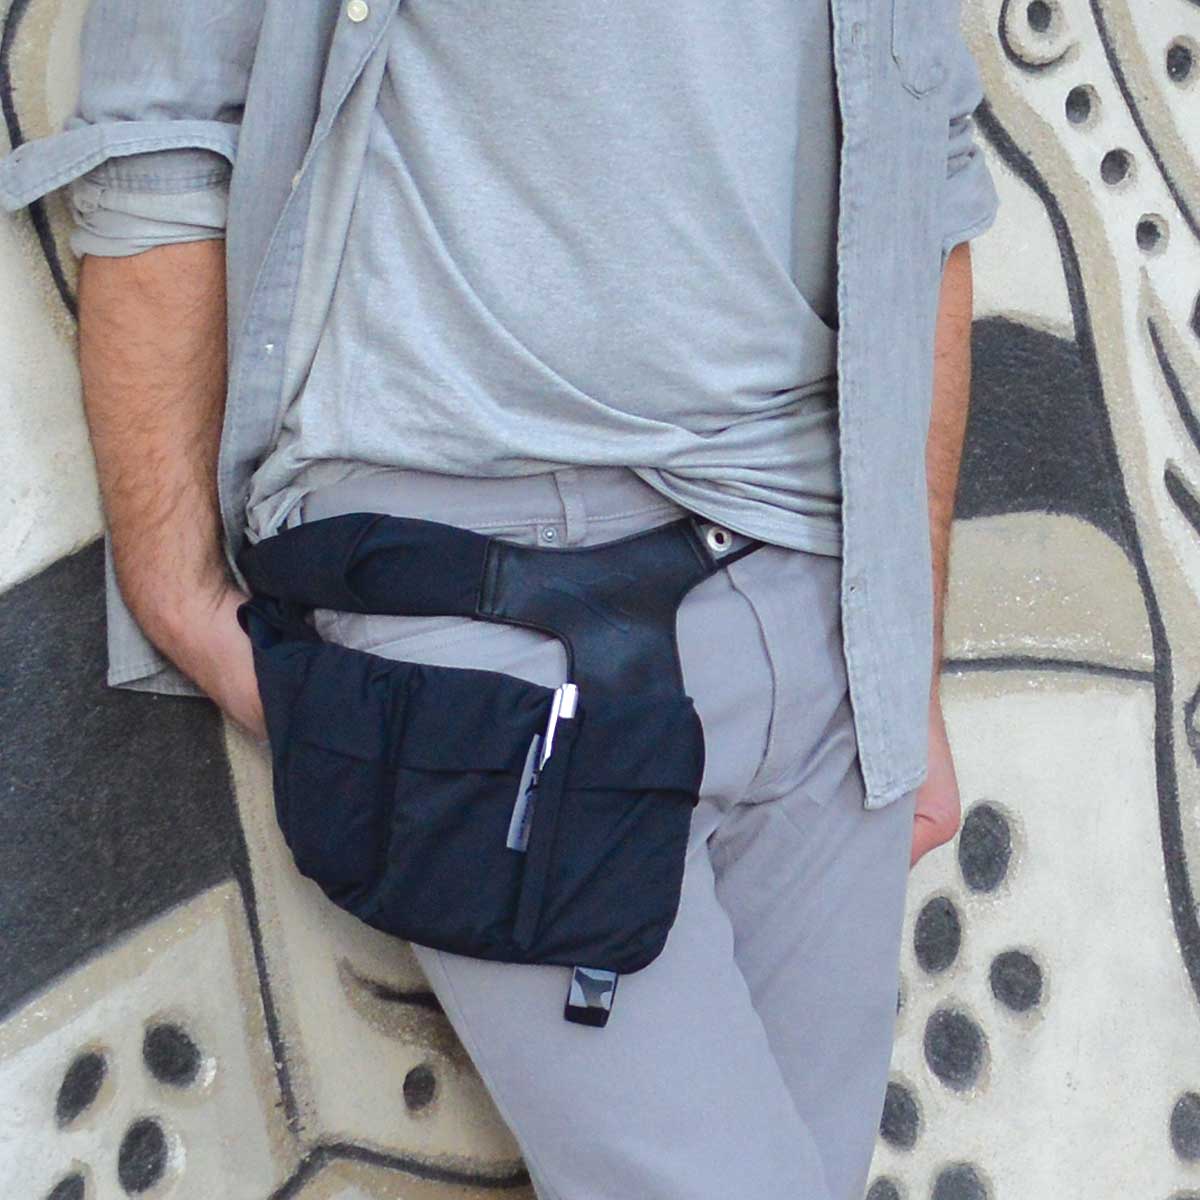 Belt Bag for Phone, Keys, Money, Running Gear Urban Tool caseBelt